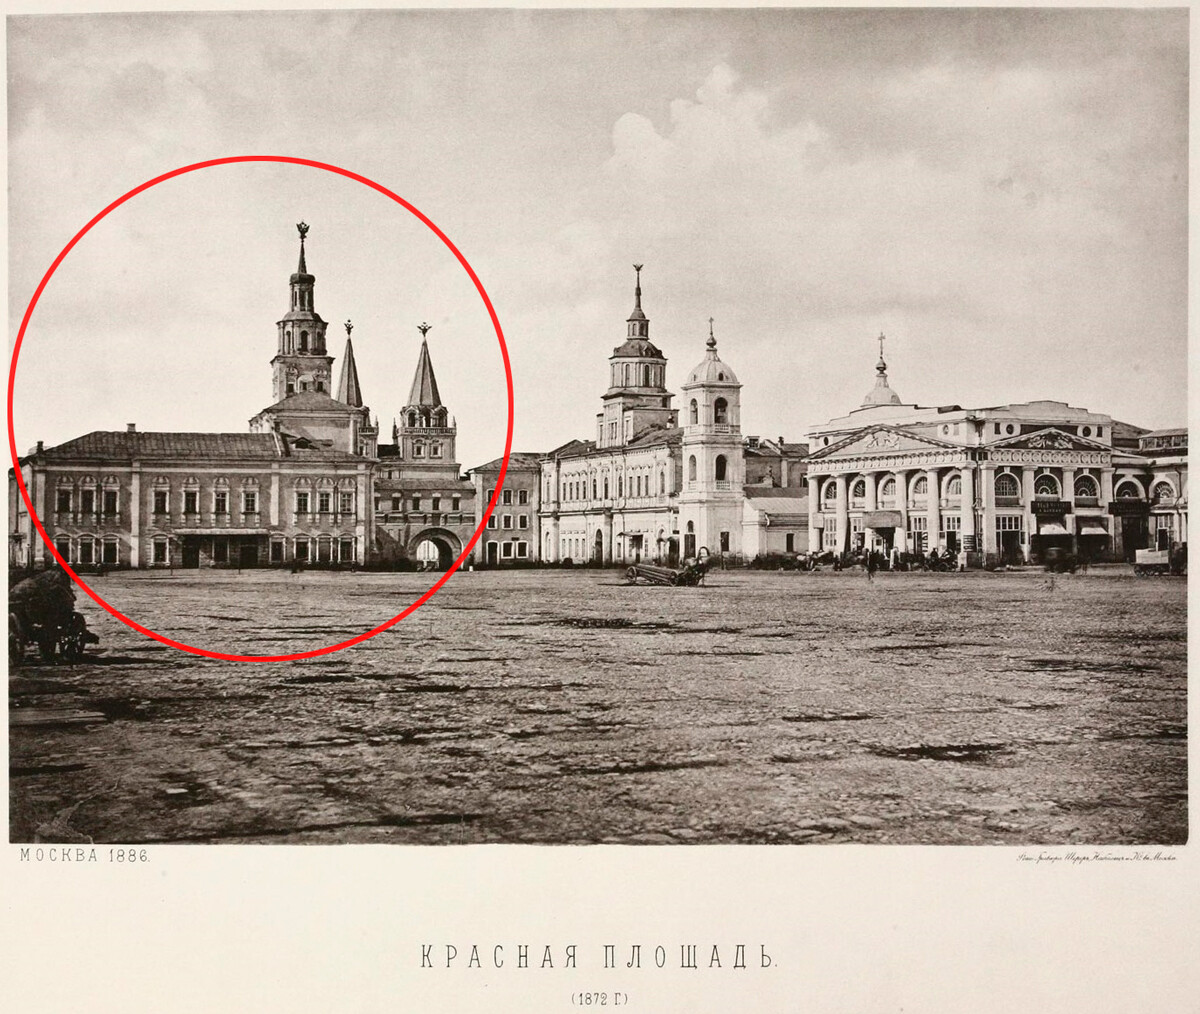 Вид на здание Земского приказа и Воскресенские ворота со стороны Красной площади, 1872